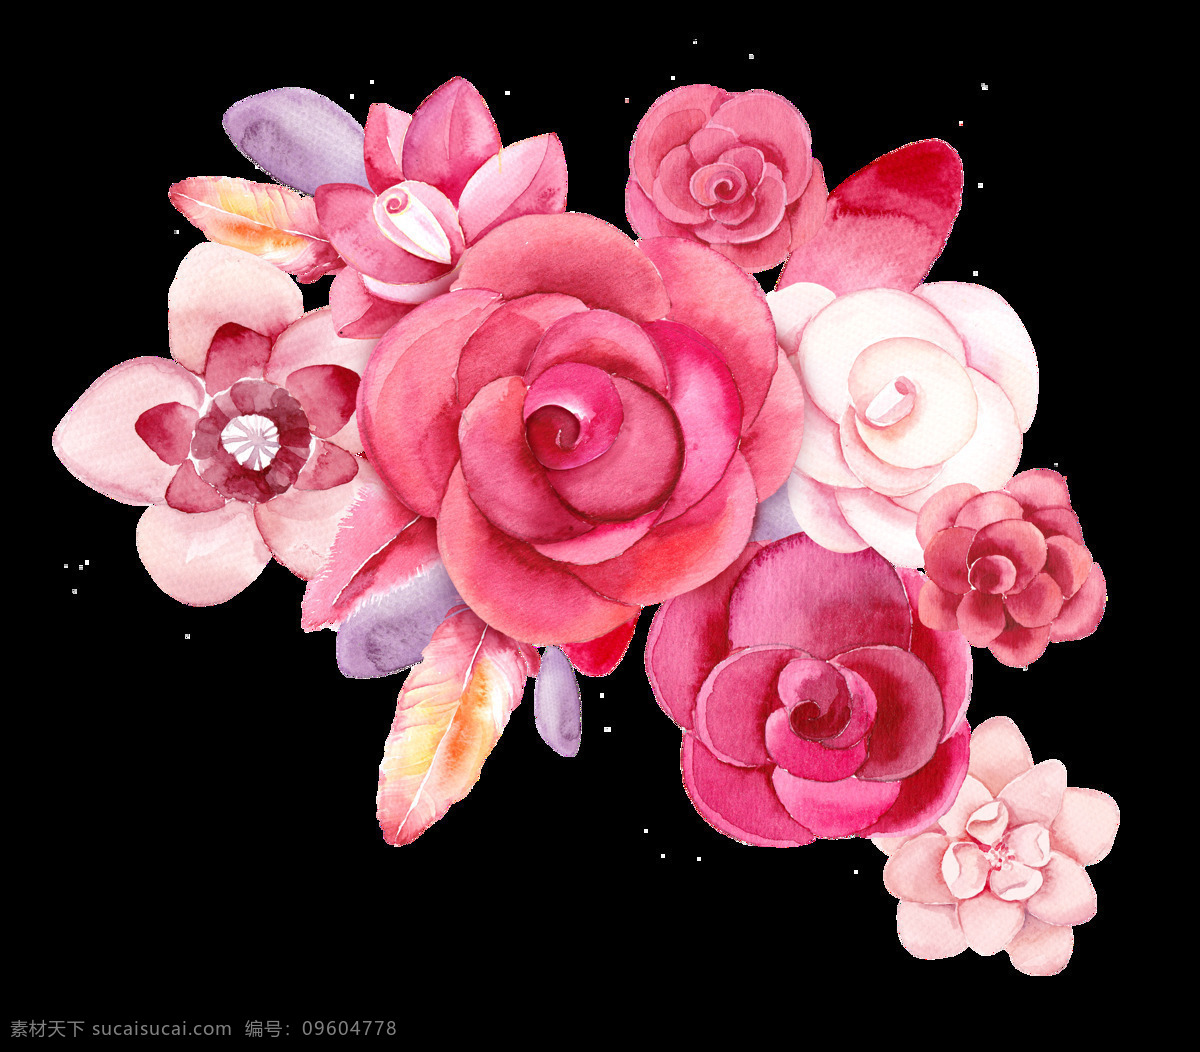 手绘 粉红色 玫瑰花 透明 桃红色 浅粉色 树叶 花束 透明素材 免扣素材 装饰图片